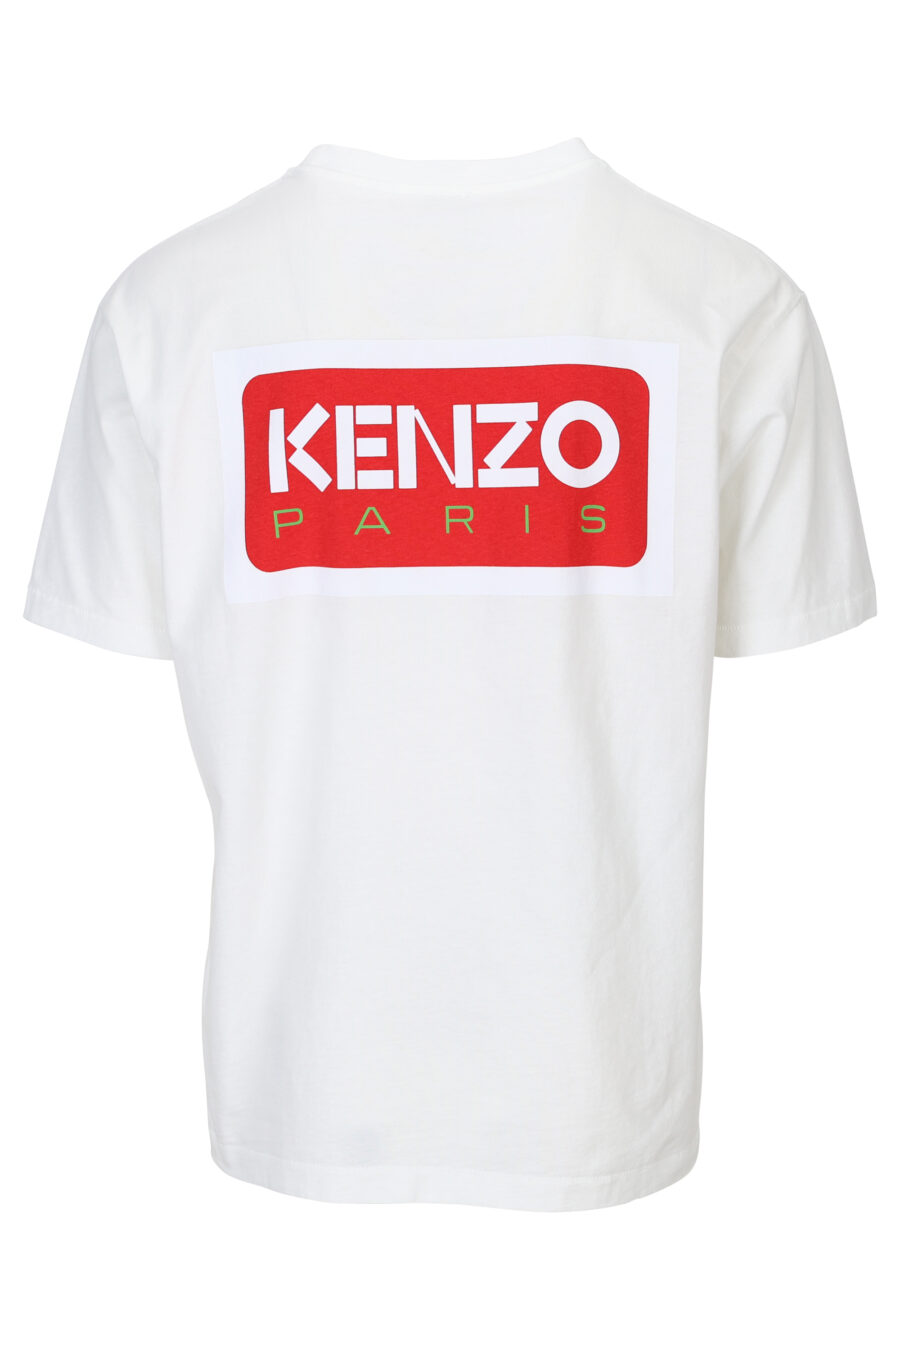 White t-shirt with "kenzo paris" maxilogo on the back - 3612230543140 1